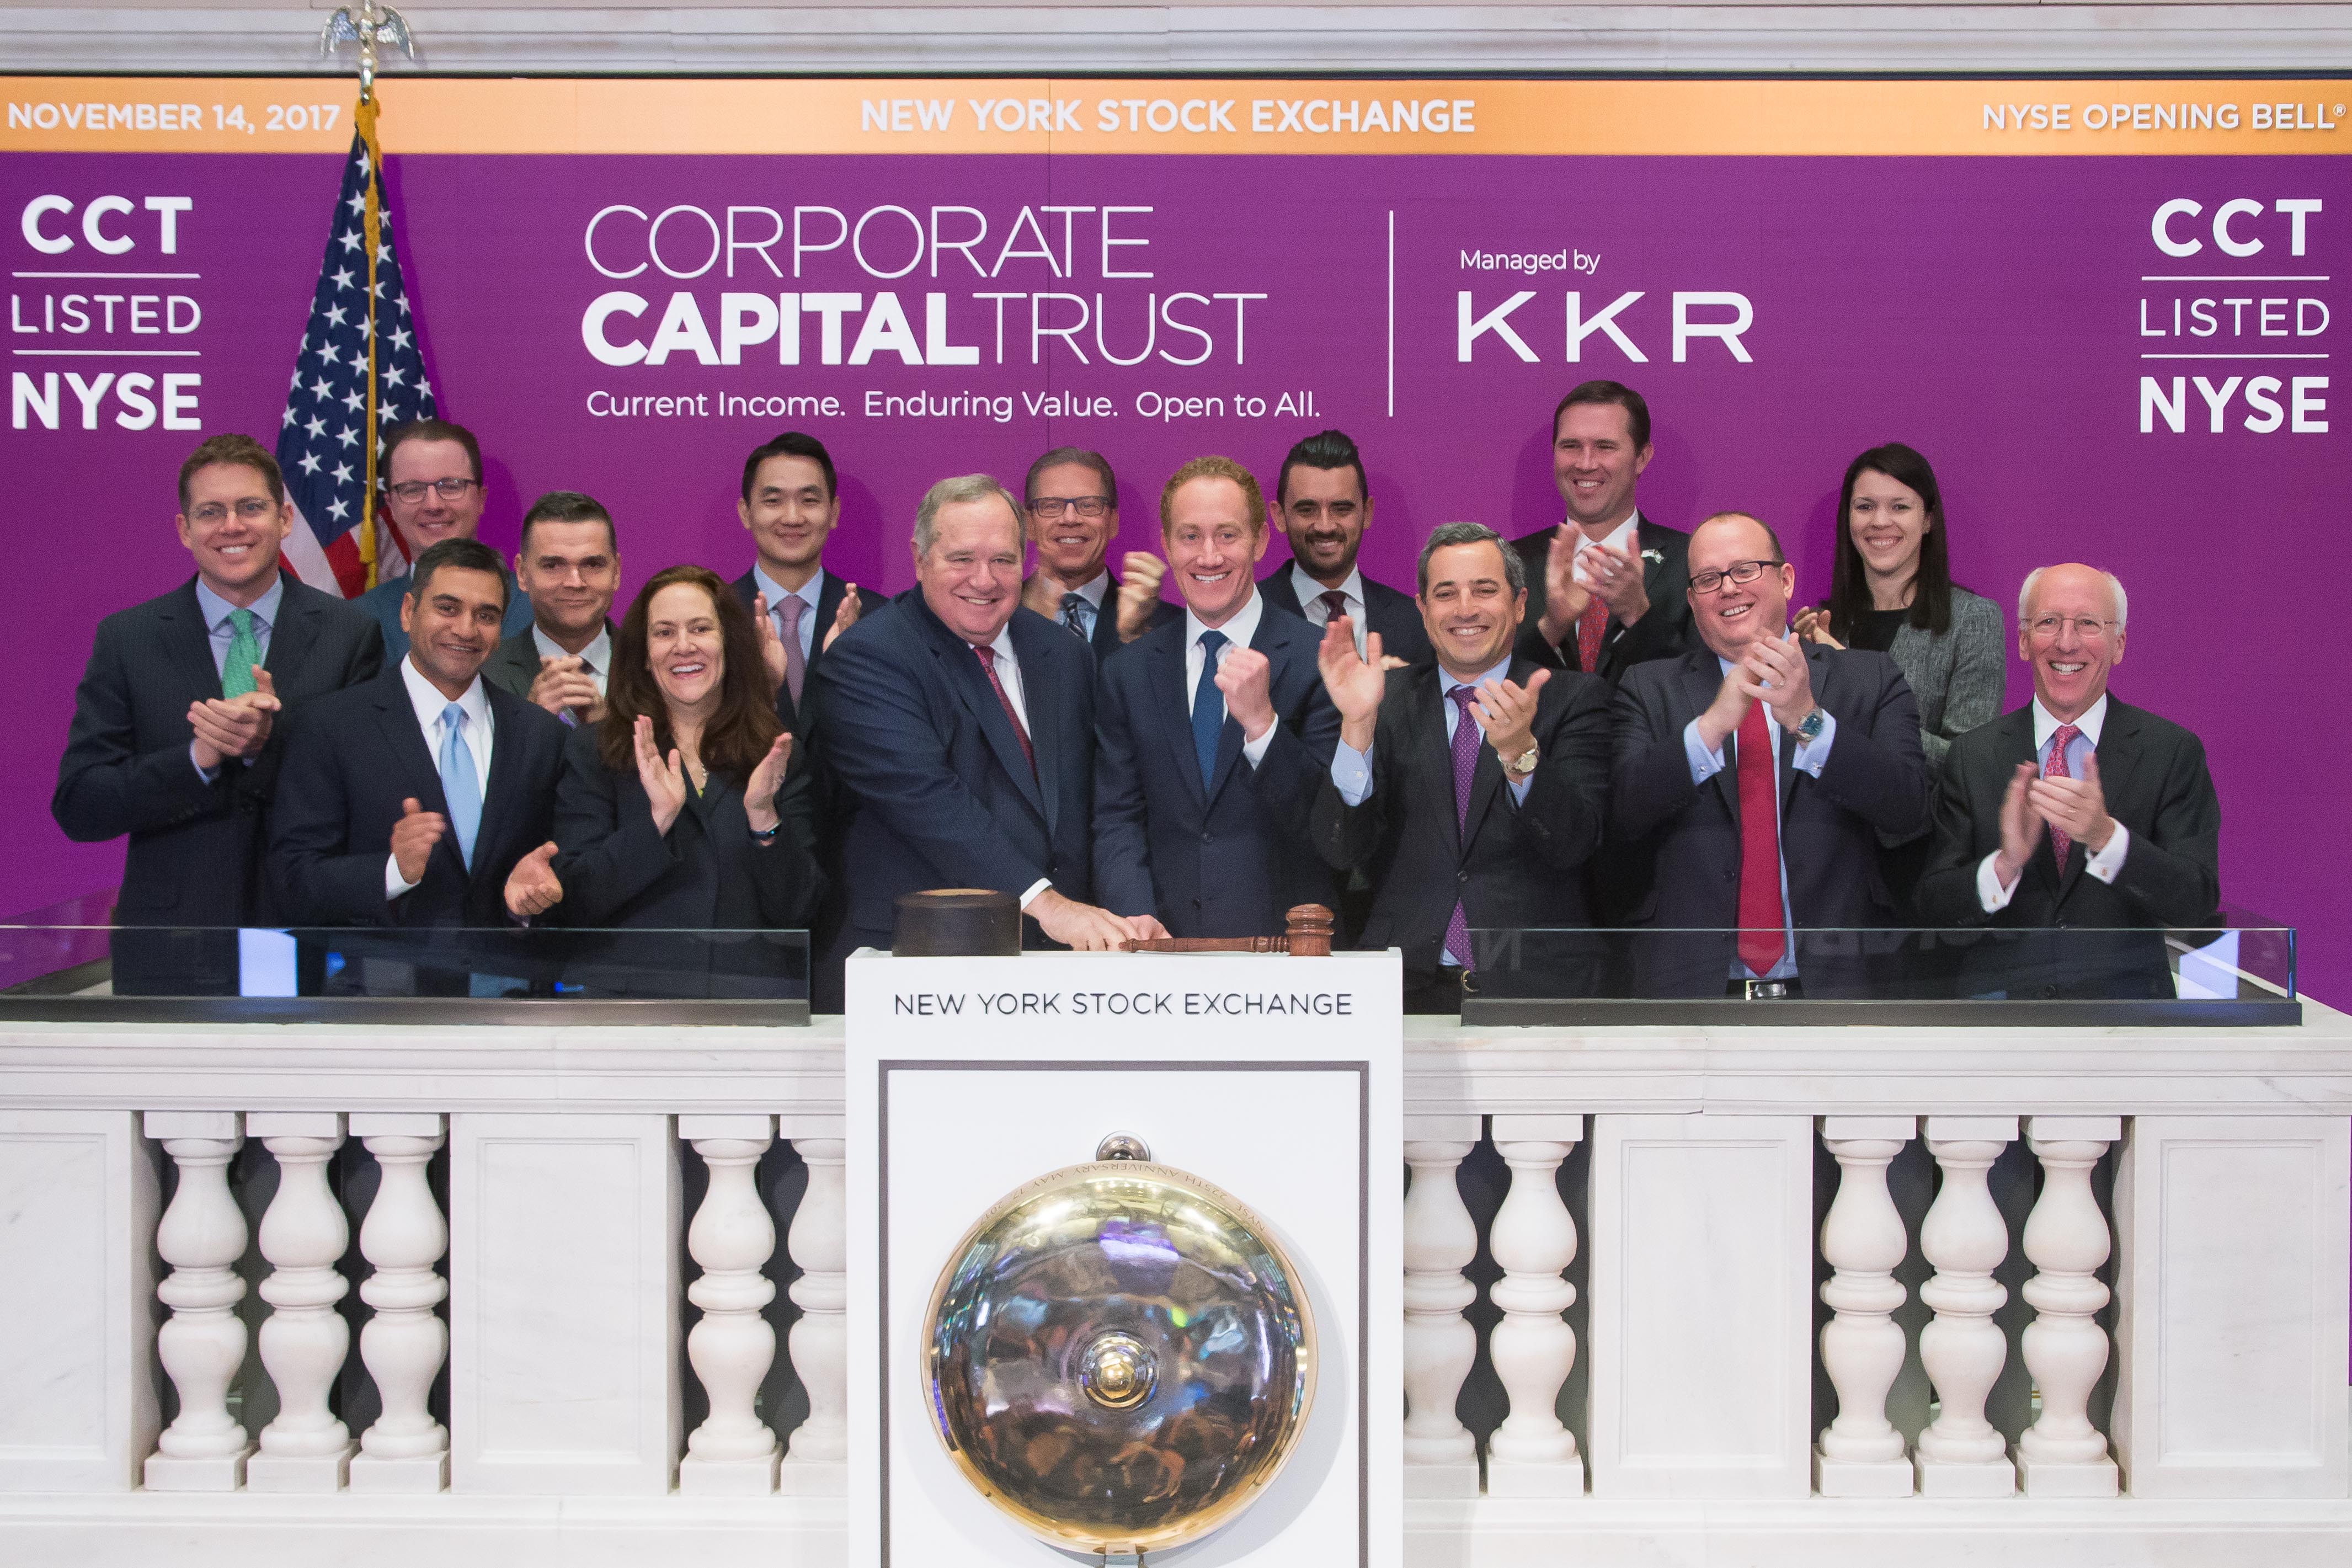 CCT on the New York Stock Exchange